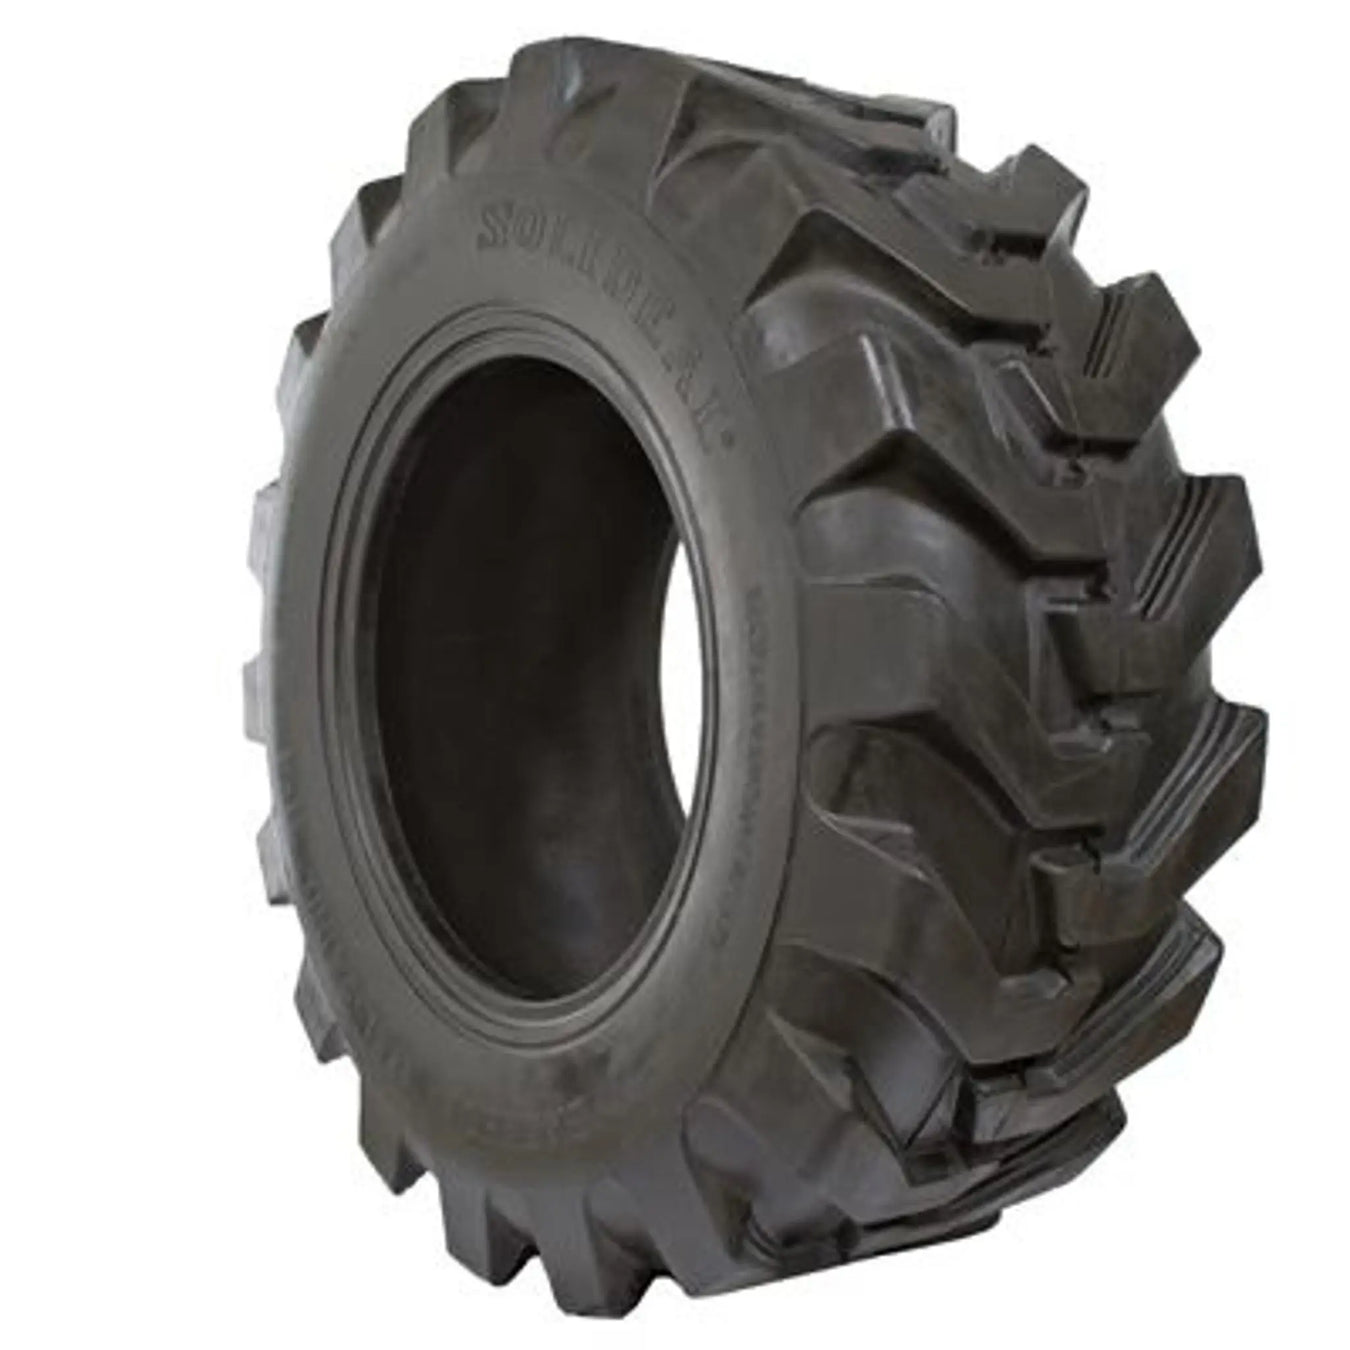 Telehandler Tires - Pneumatic Tire Size - 12.5/80-18